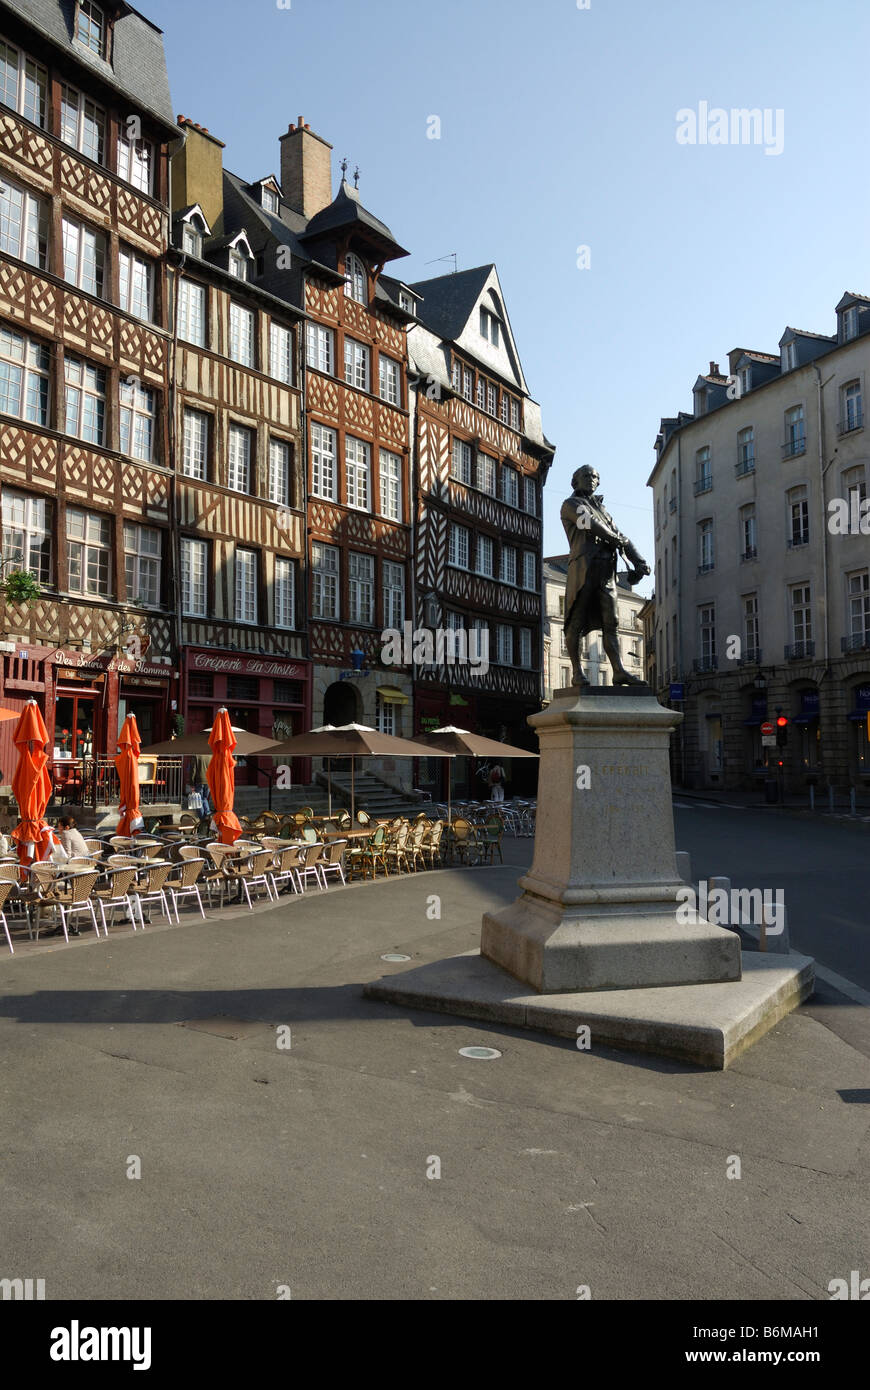 Rennes Bretagne France médiévale colorées à colombages de bâtiments sur place du champ Jacquet Banque D'Images